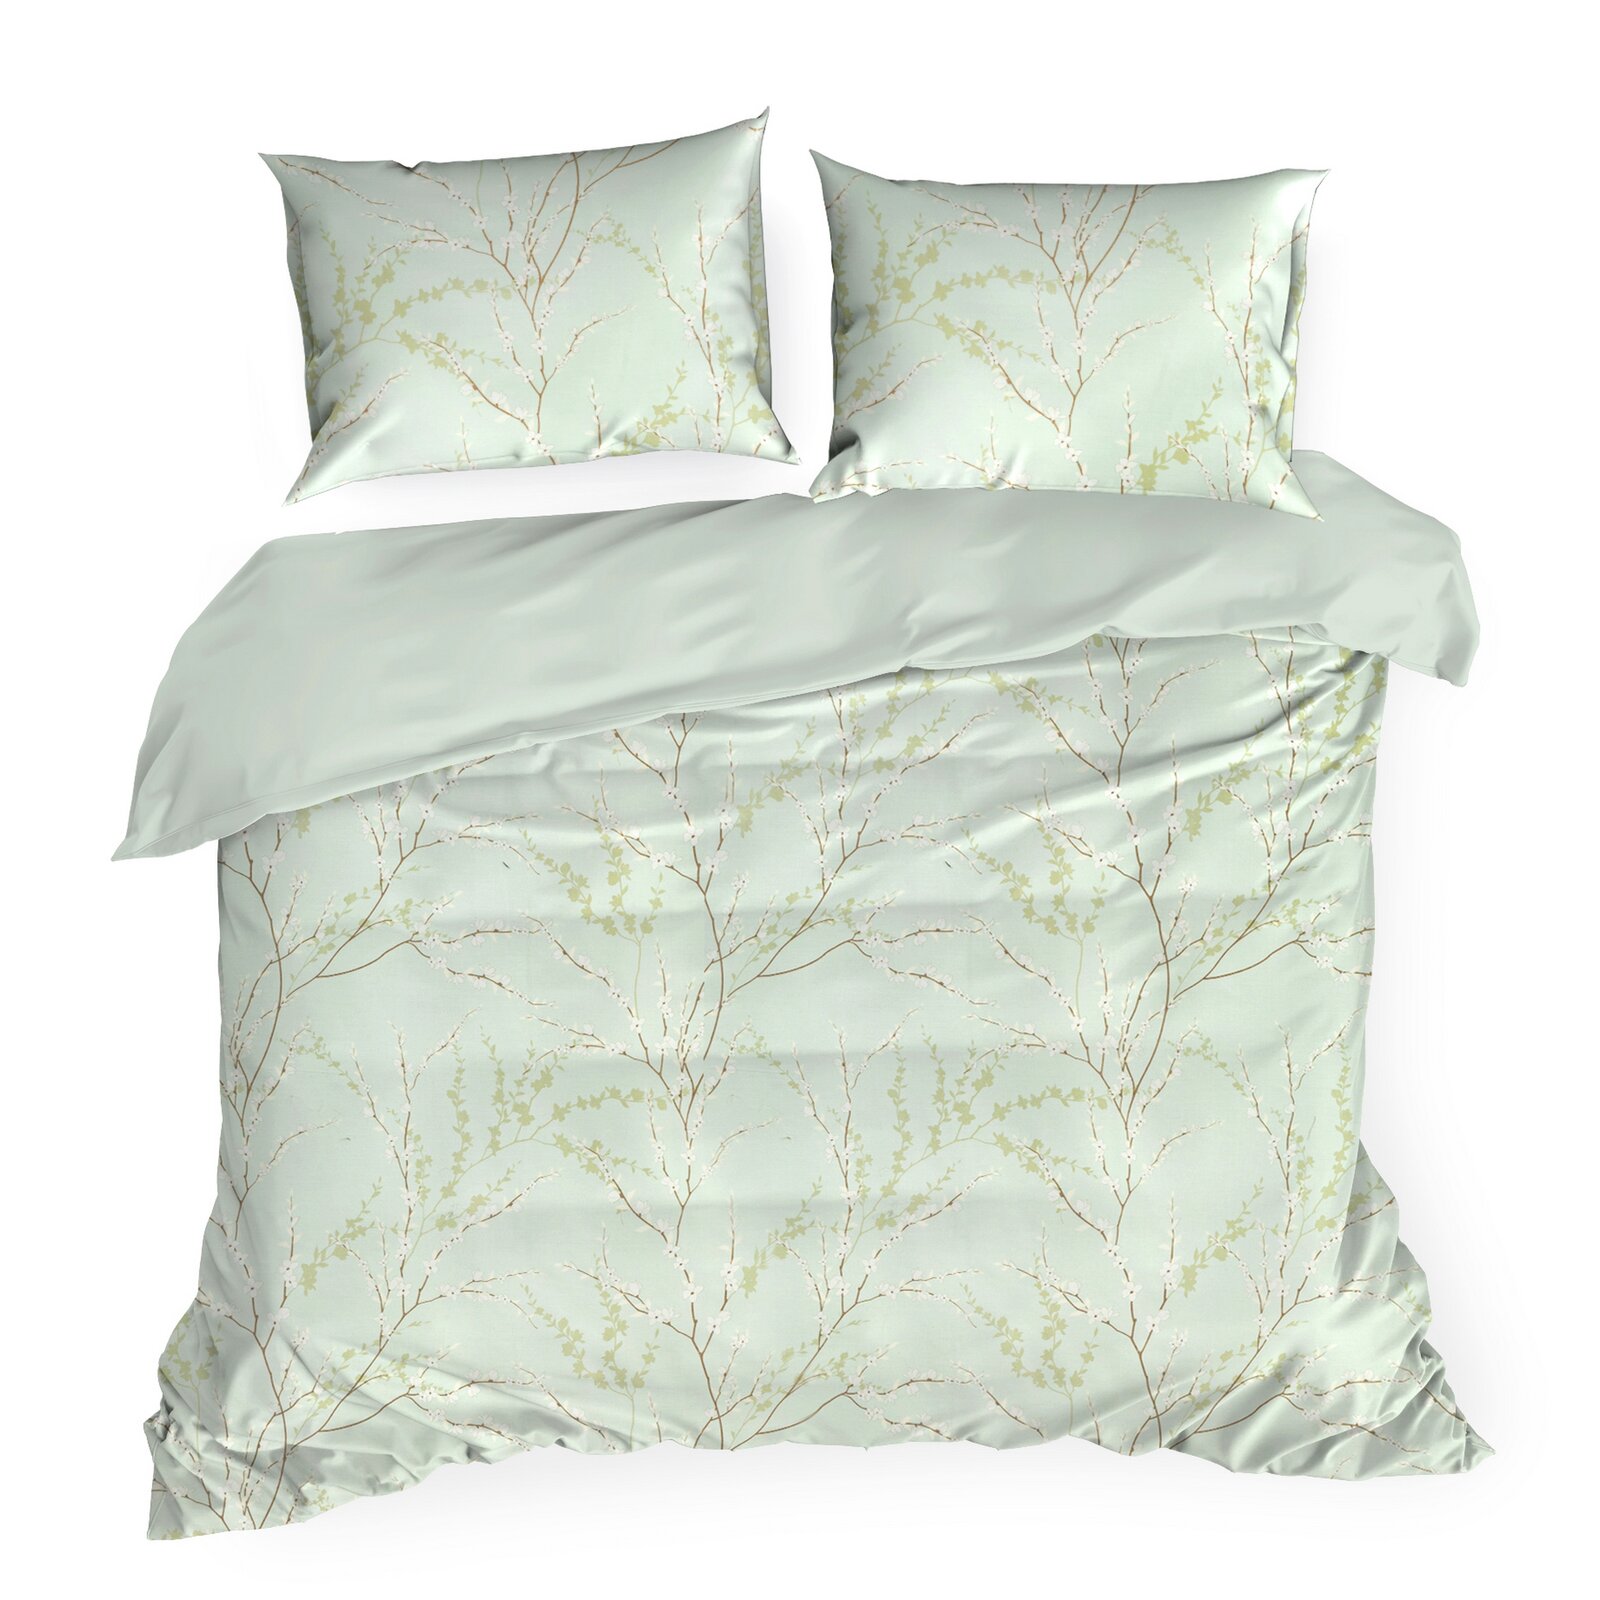 Obliečky na posteľ sprírodným vzorom zo saténovej bavlny - Nelly 2, prikrývka 160 x 200 cm + 2x vankúš 70 x 80 cm